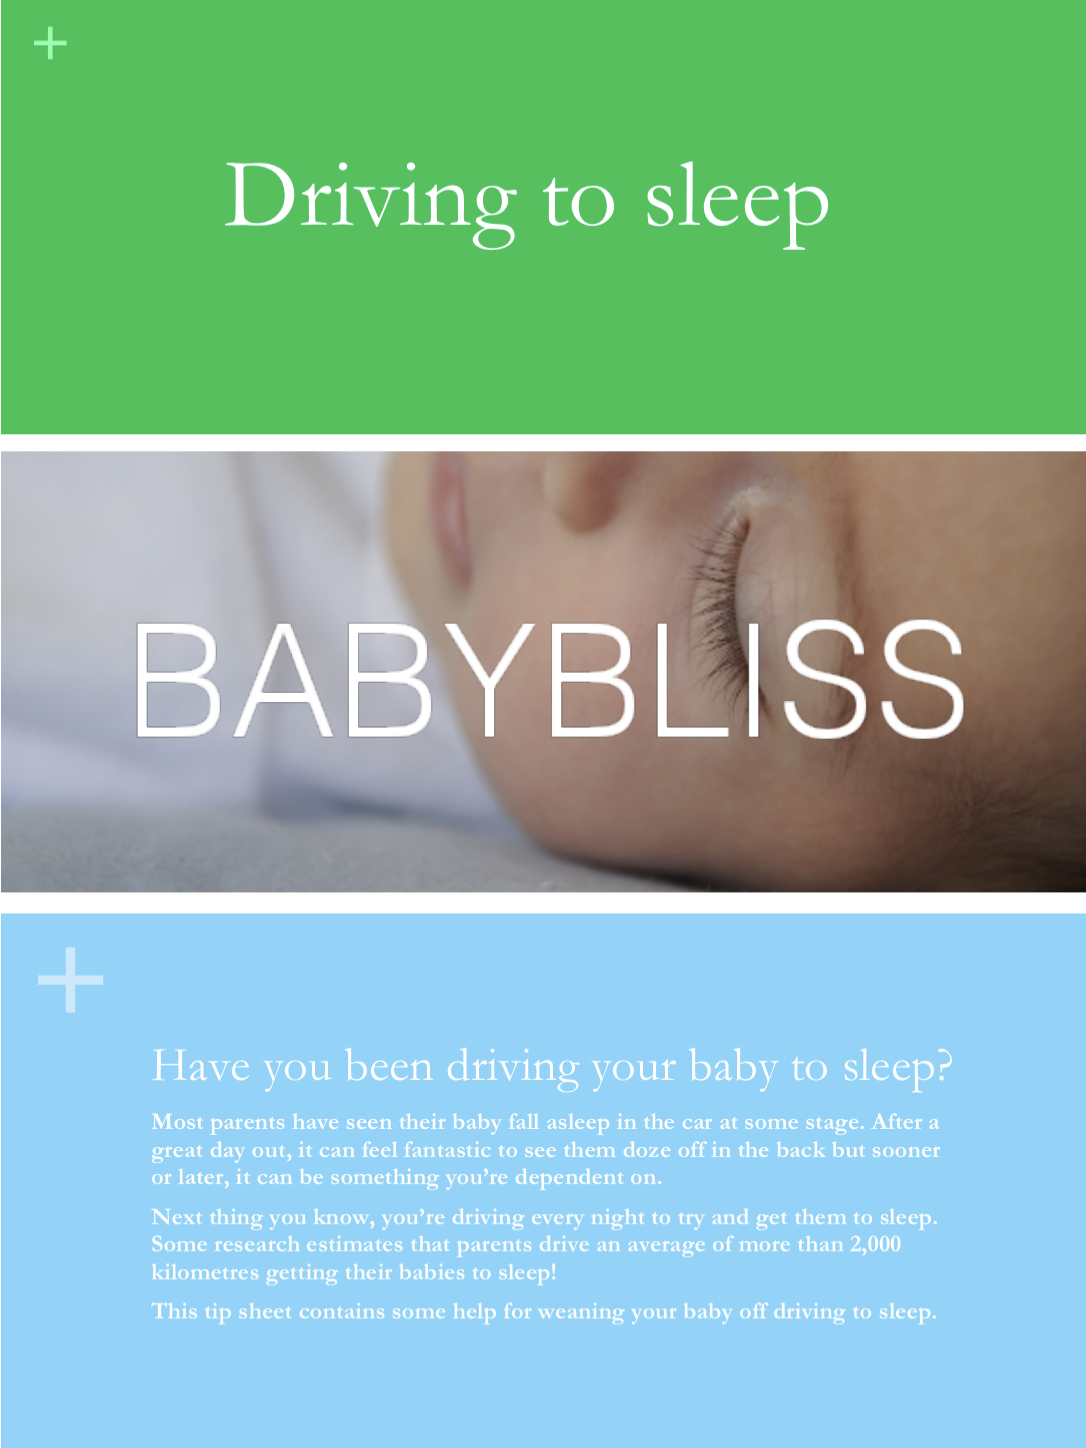 Driving to sleep tip sheet